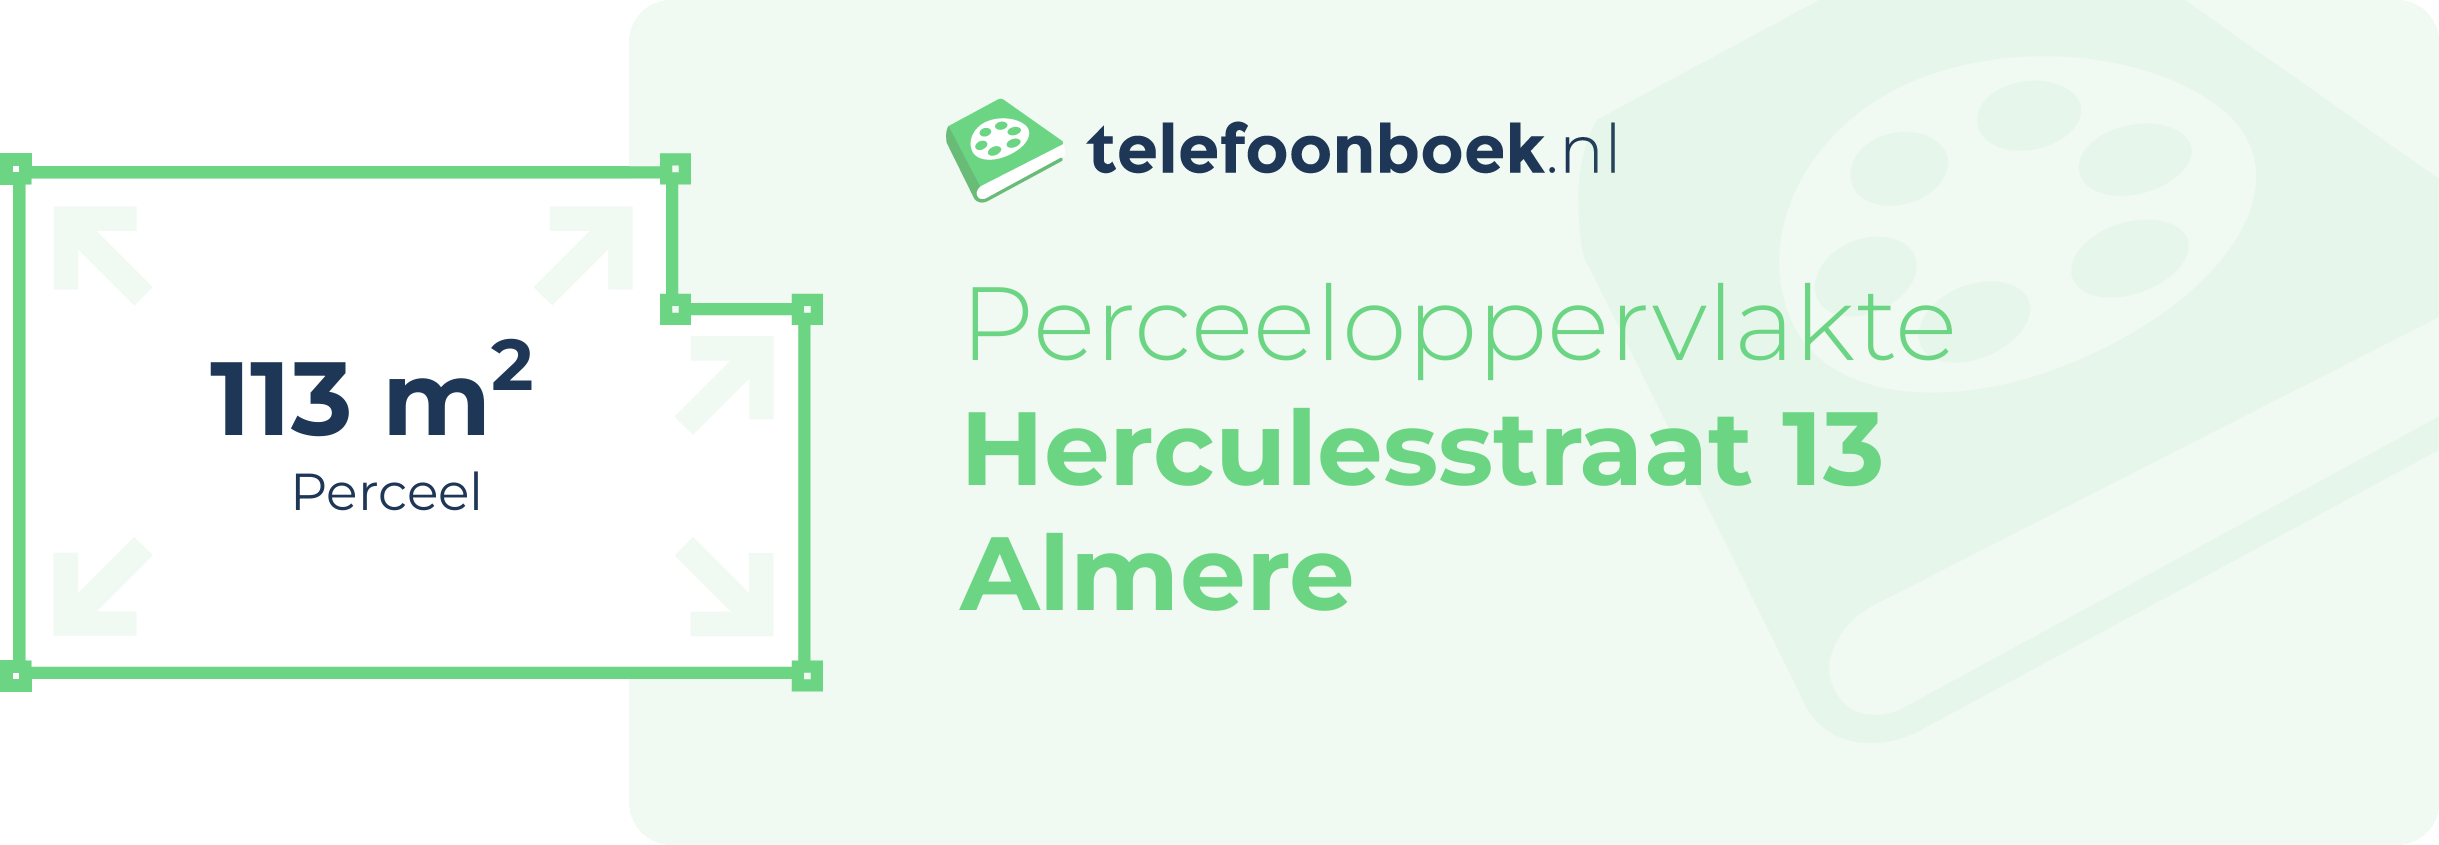 Perceeloppervlakte Herculesstraat 13 Almere